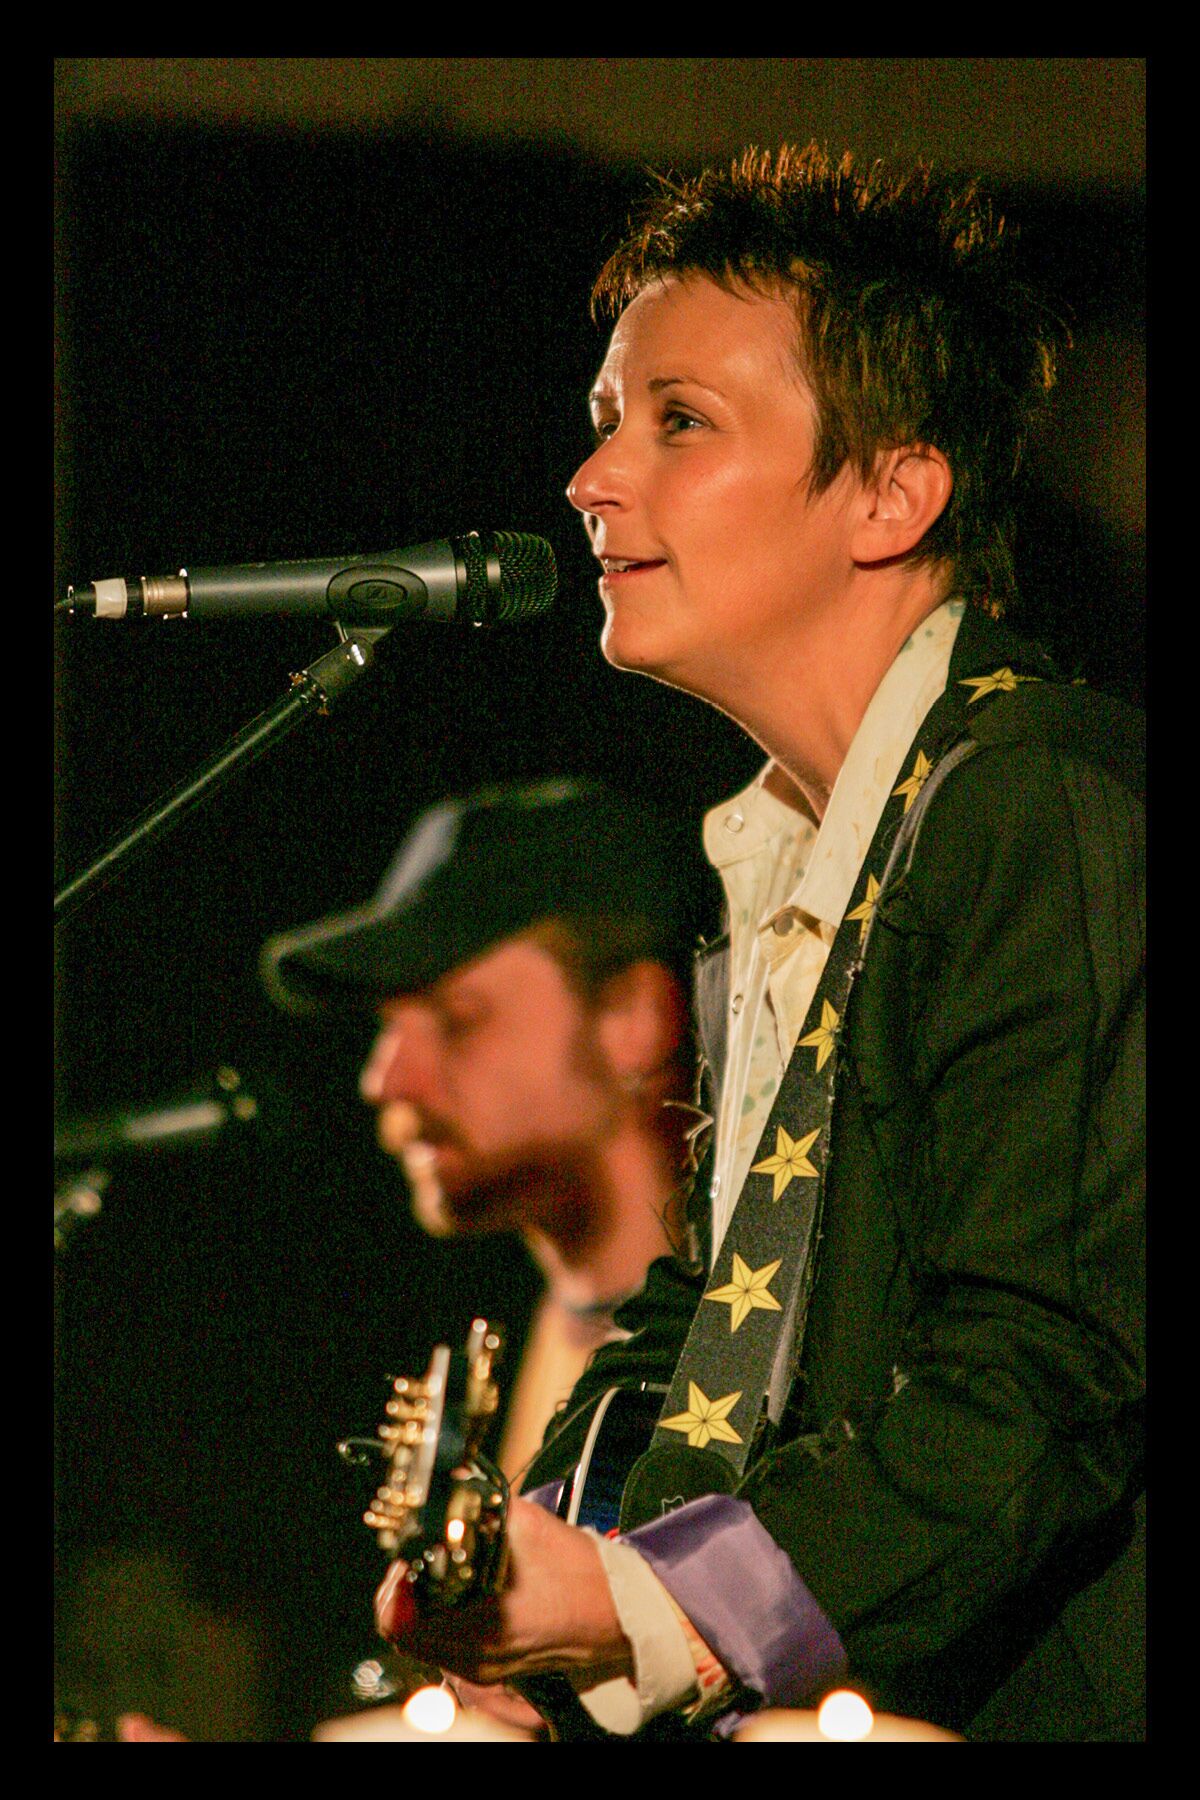 La cantautora Mary Gauthier, a la derecha, aparece en su actuación en los AMSDConcerts de 2006 con el guitarrista Thomm Jutz.